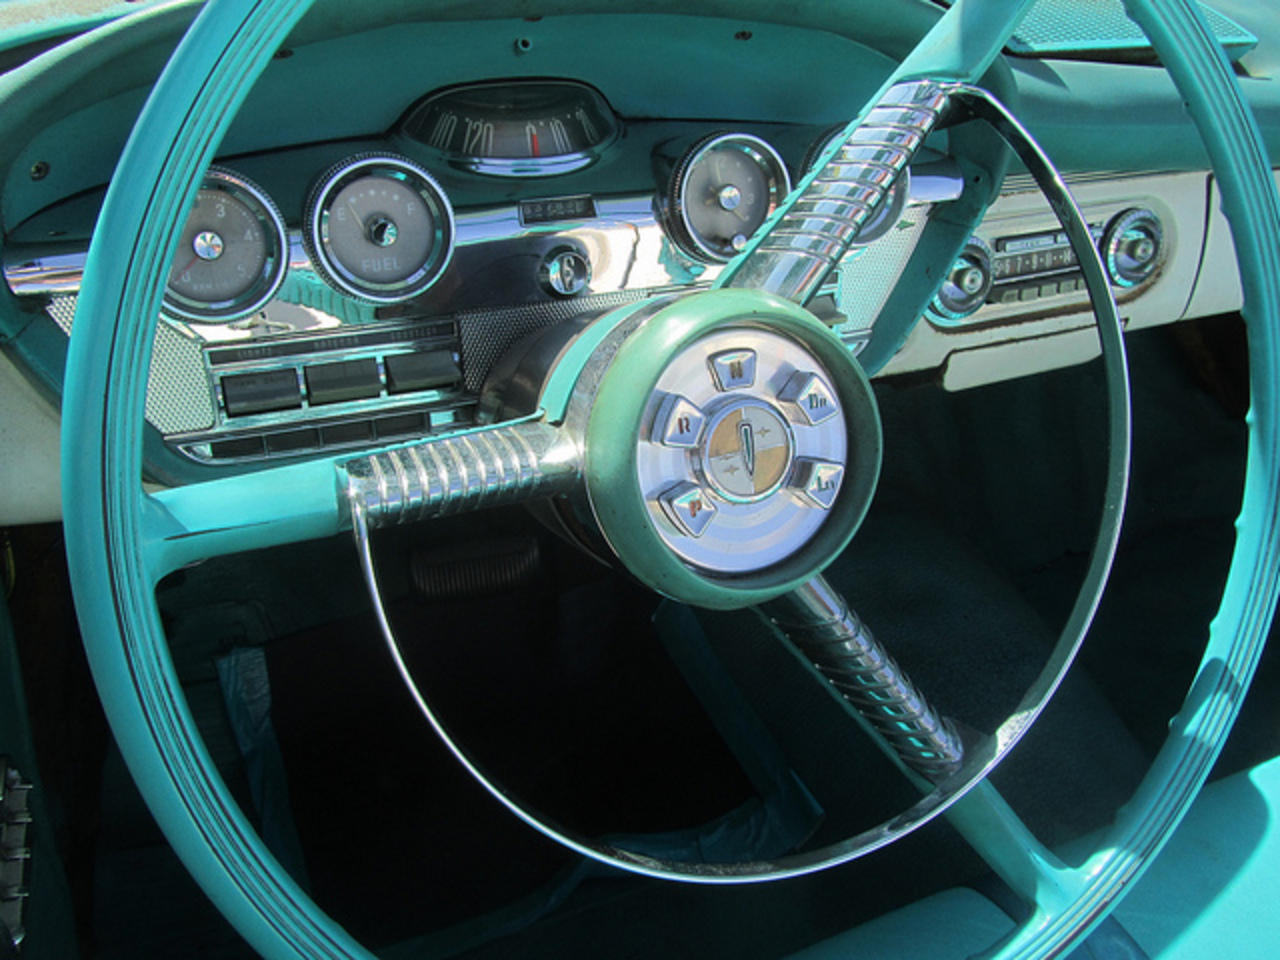 Flickr: The Horn rings on car steering wheels. Pool